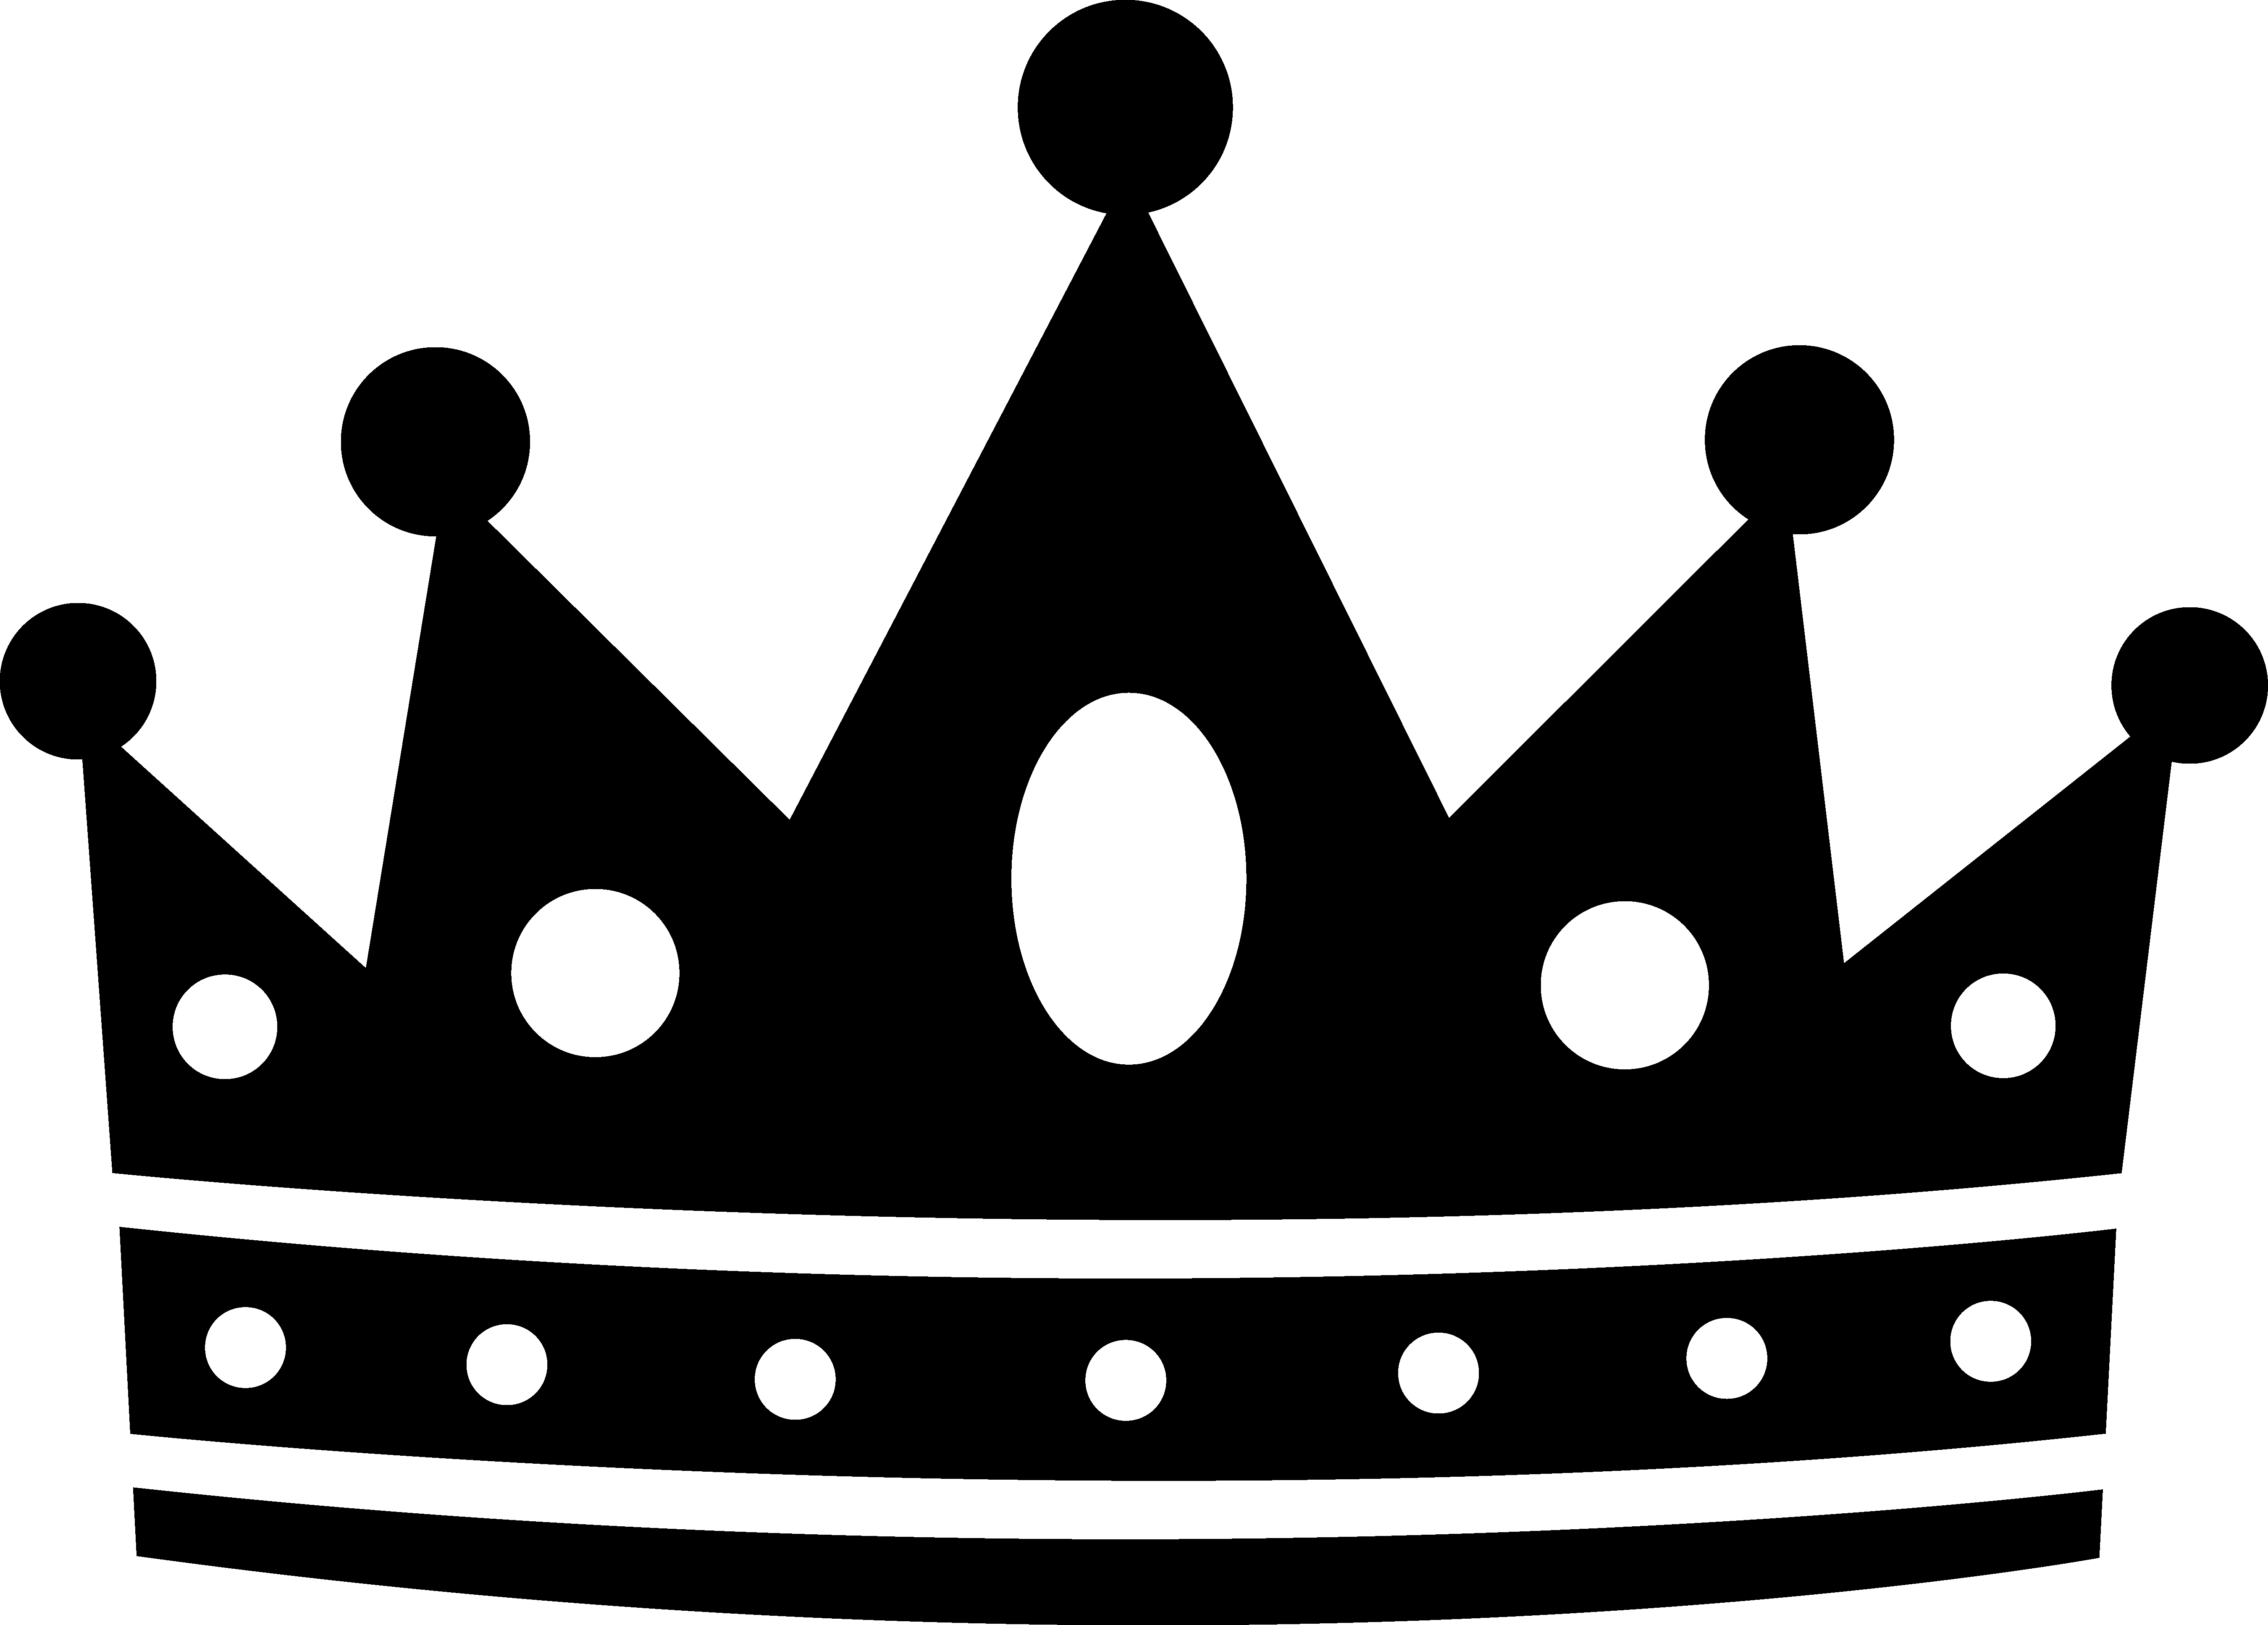 Monochrome Crown Graphic